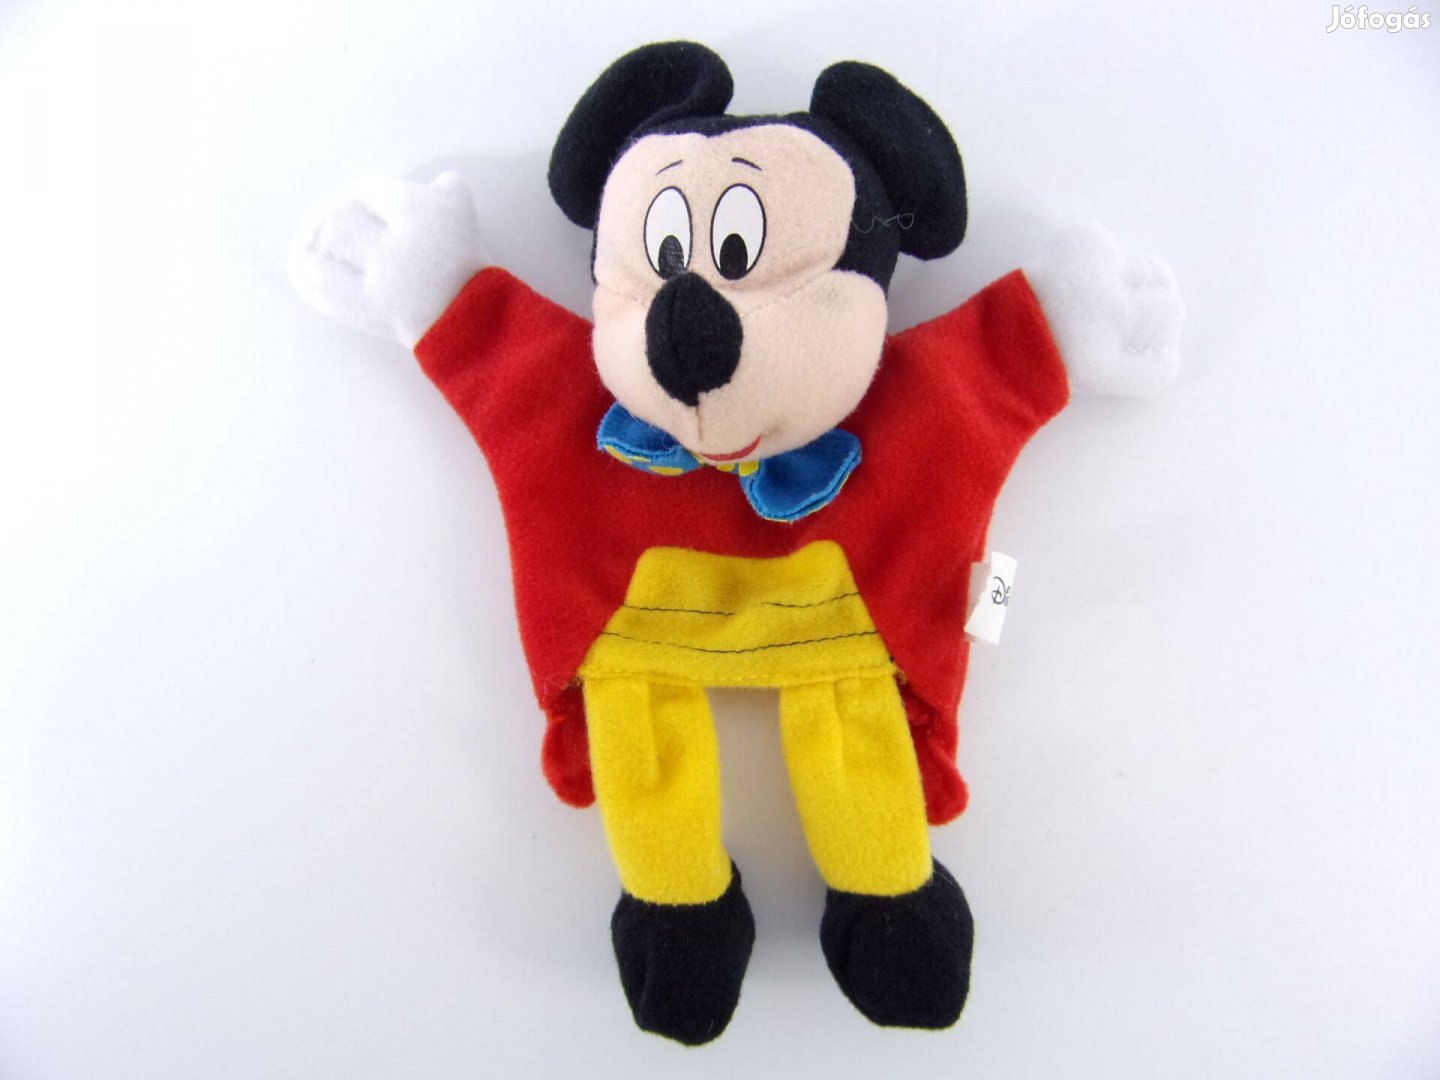 Mickey egér ujjbáb plüss figura